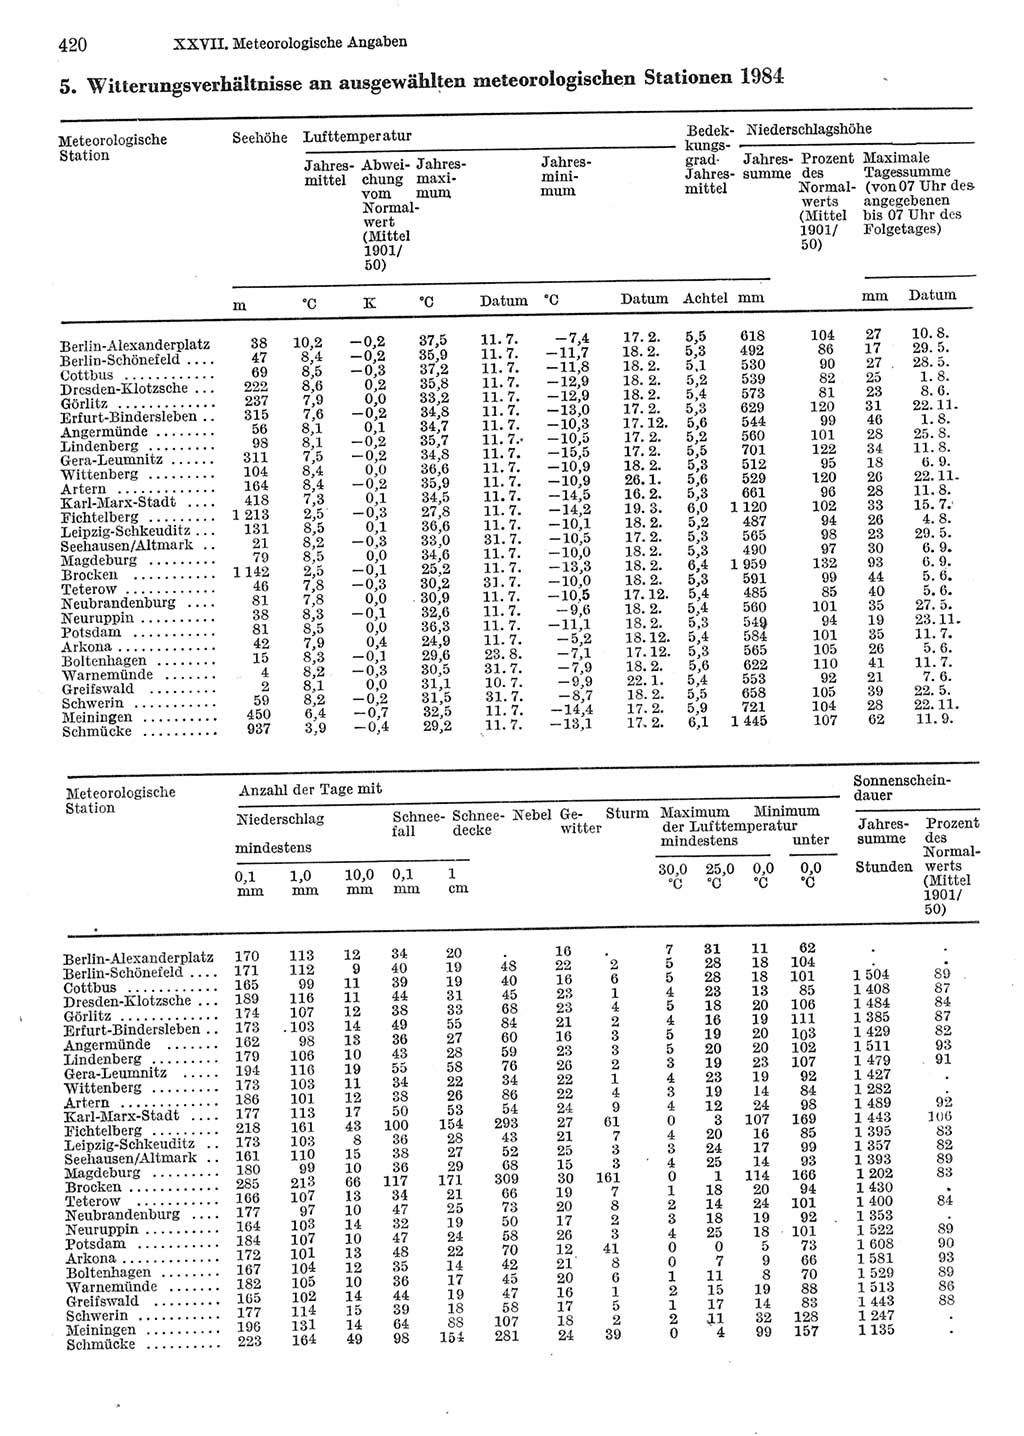 Statistisches Jahrbuch der Deutschen Demokratischen Republik (DDR) 1985, Seite 420 (Stat. Jb. DDR 1985, S. 420)